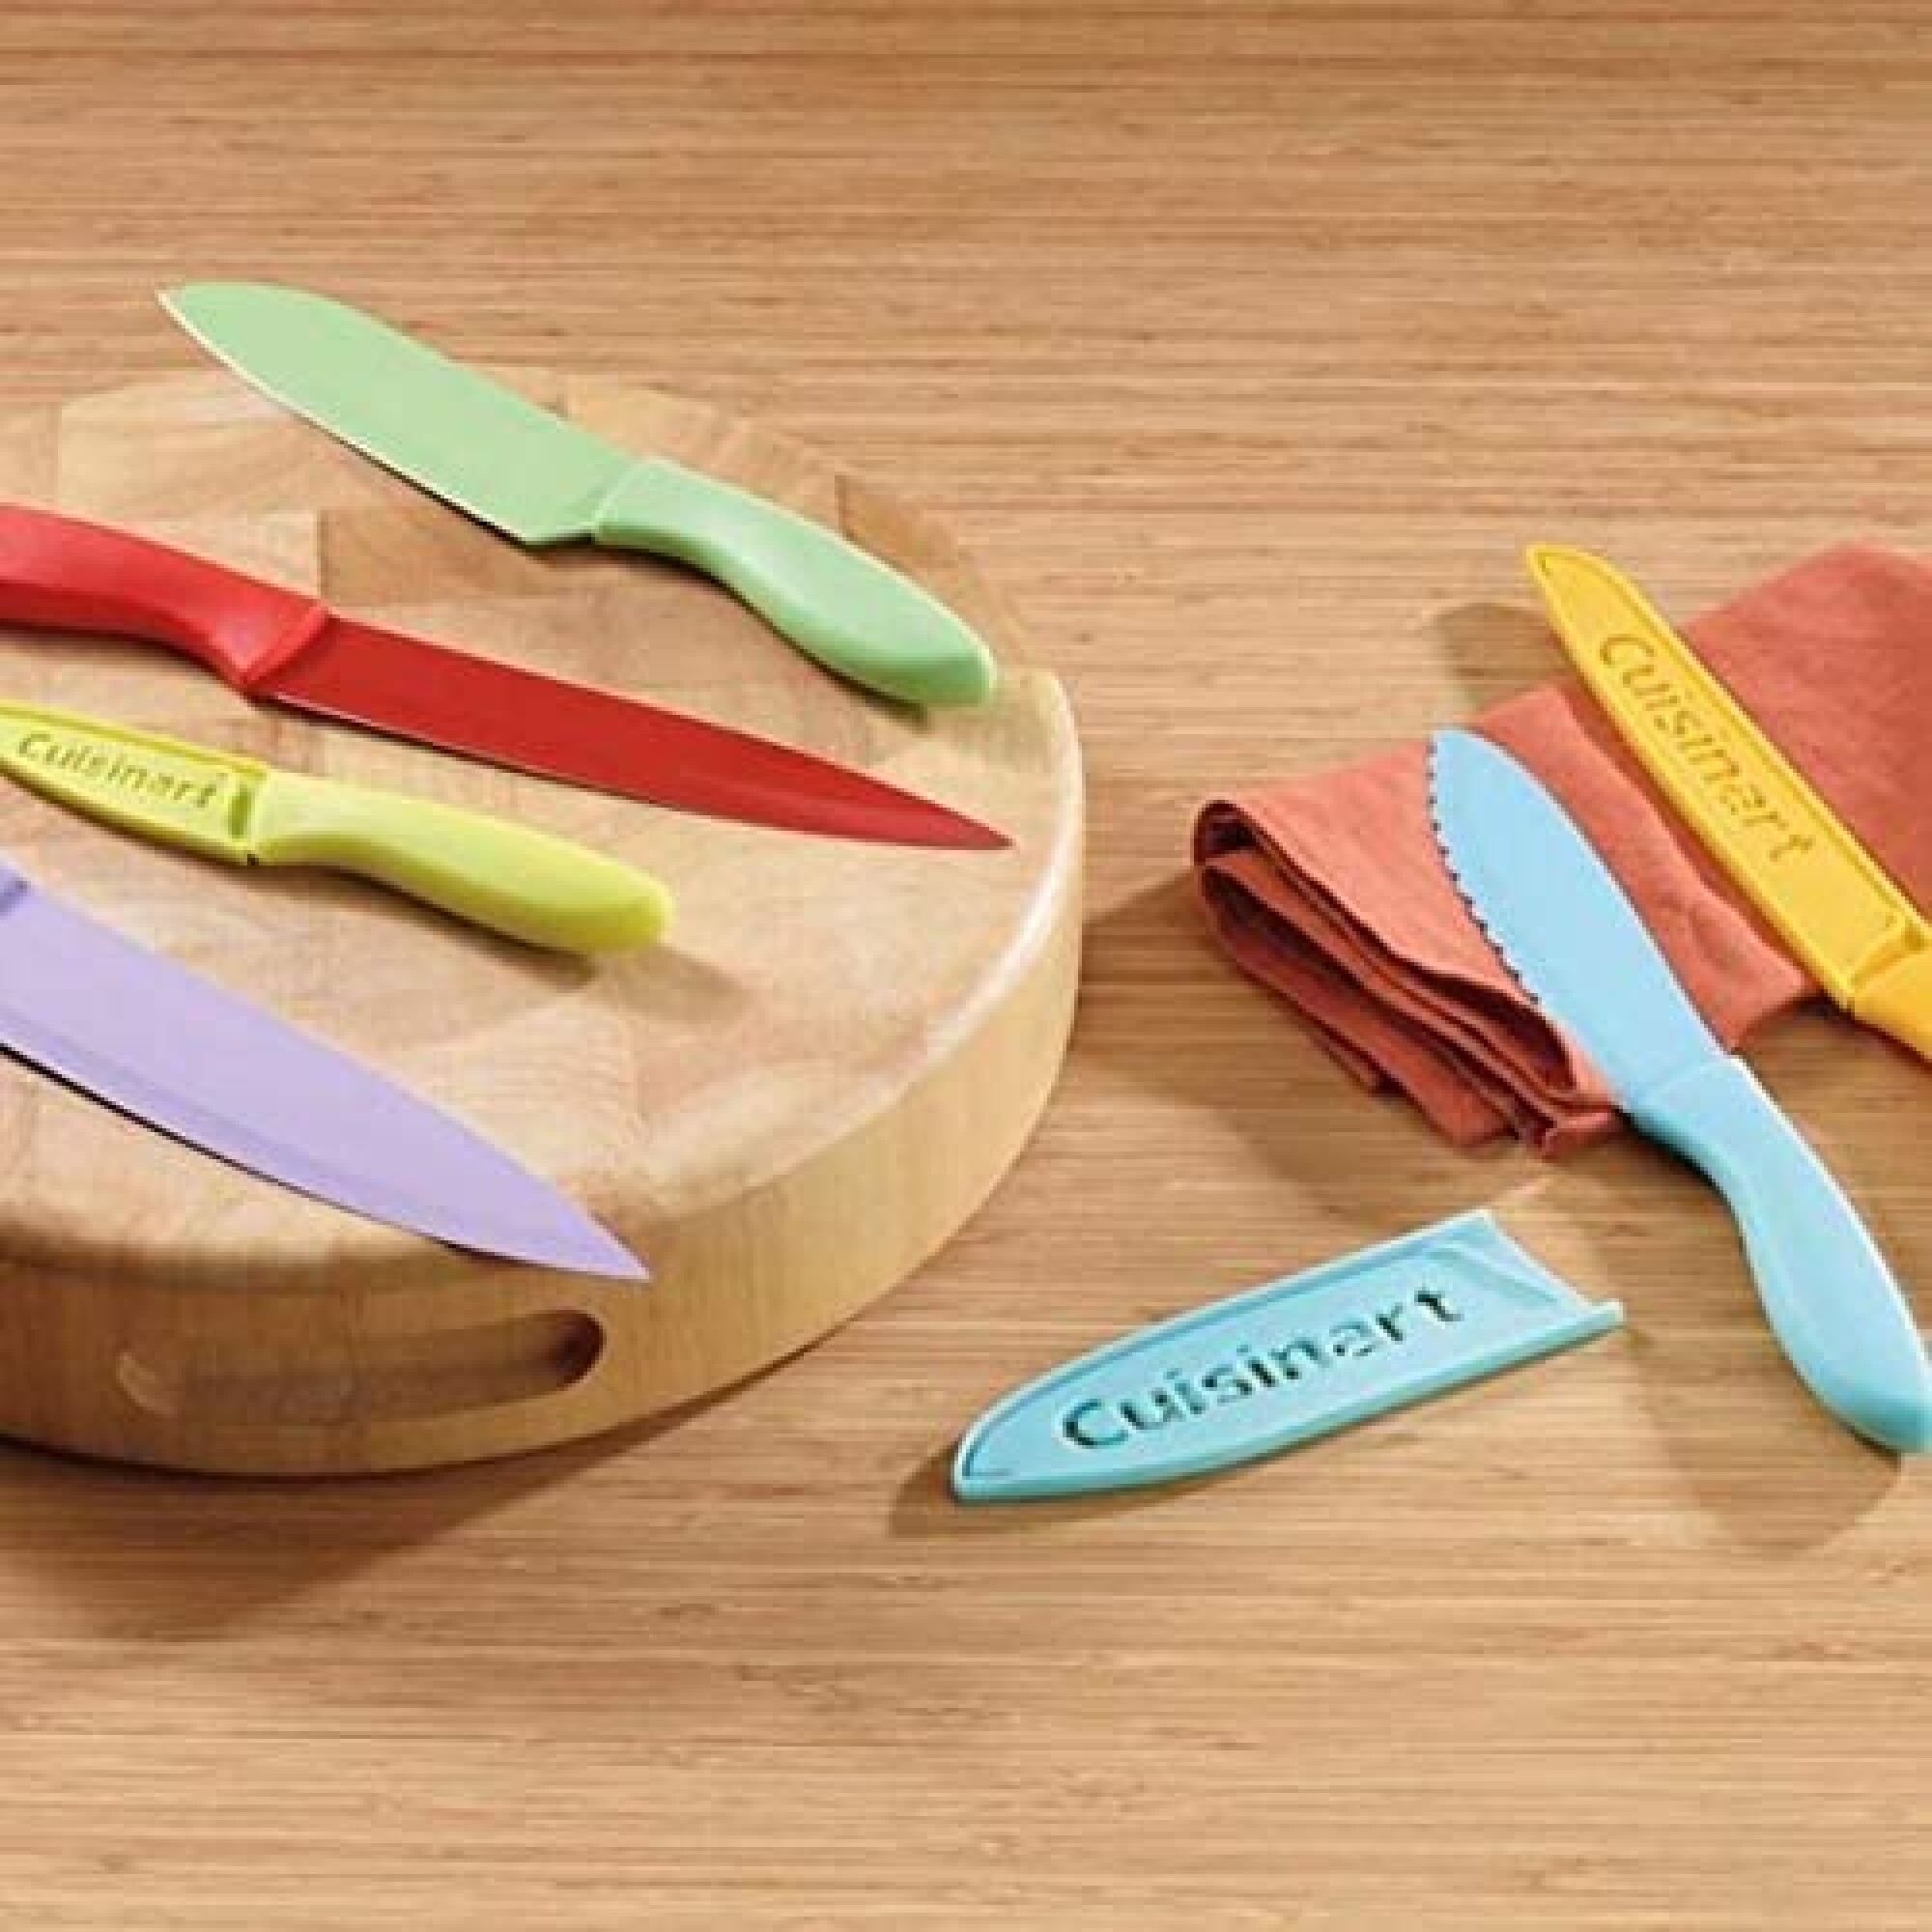 Cuchillos set multicolor por 6 Cuisinart — Amo cocinar